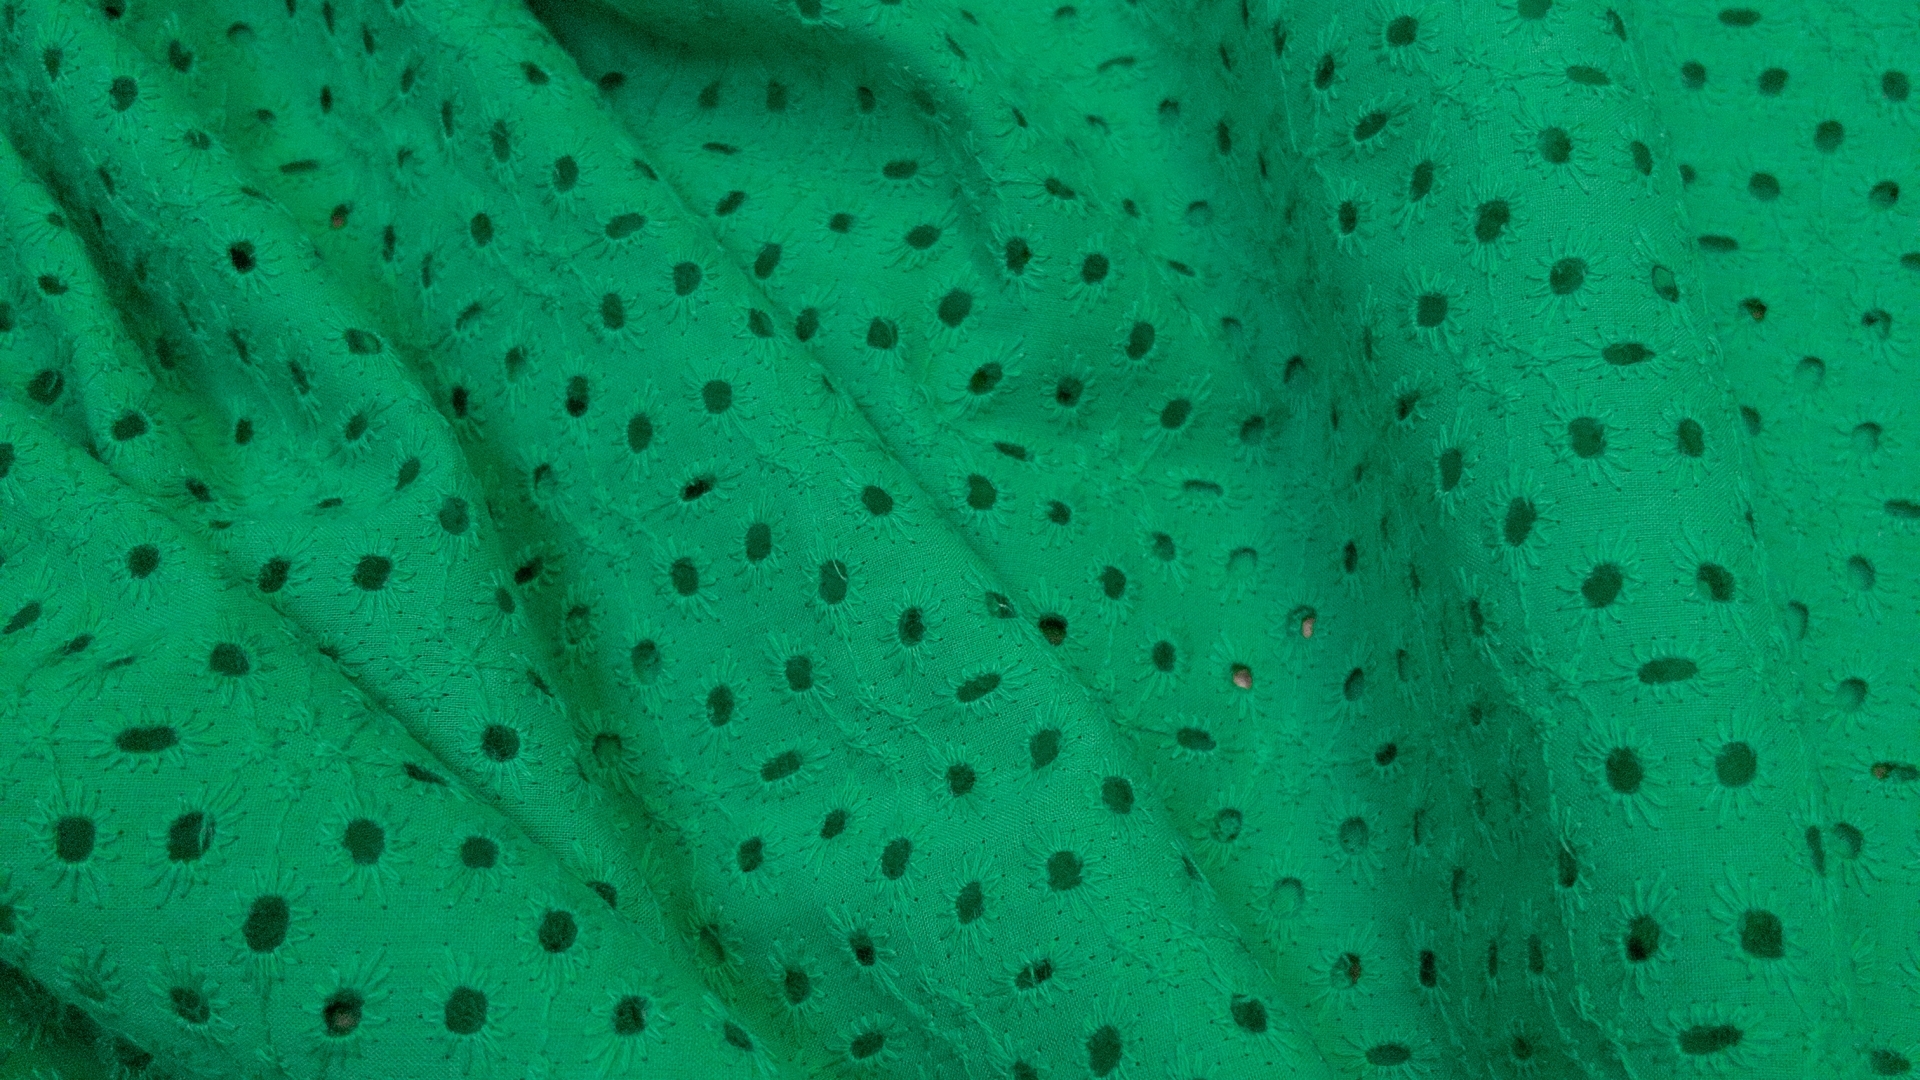 Хлопковое шитье в зеленом цвете. Ткань воздухопроницаемая, средней сминаемости. На ощупь нежная, тонкая и приятная. Идеально для рубашки или длинного свободного платья, для которого понадобится подклад.